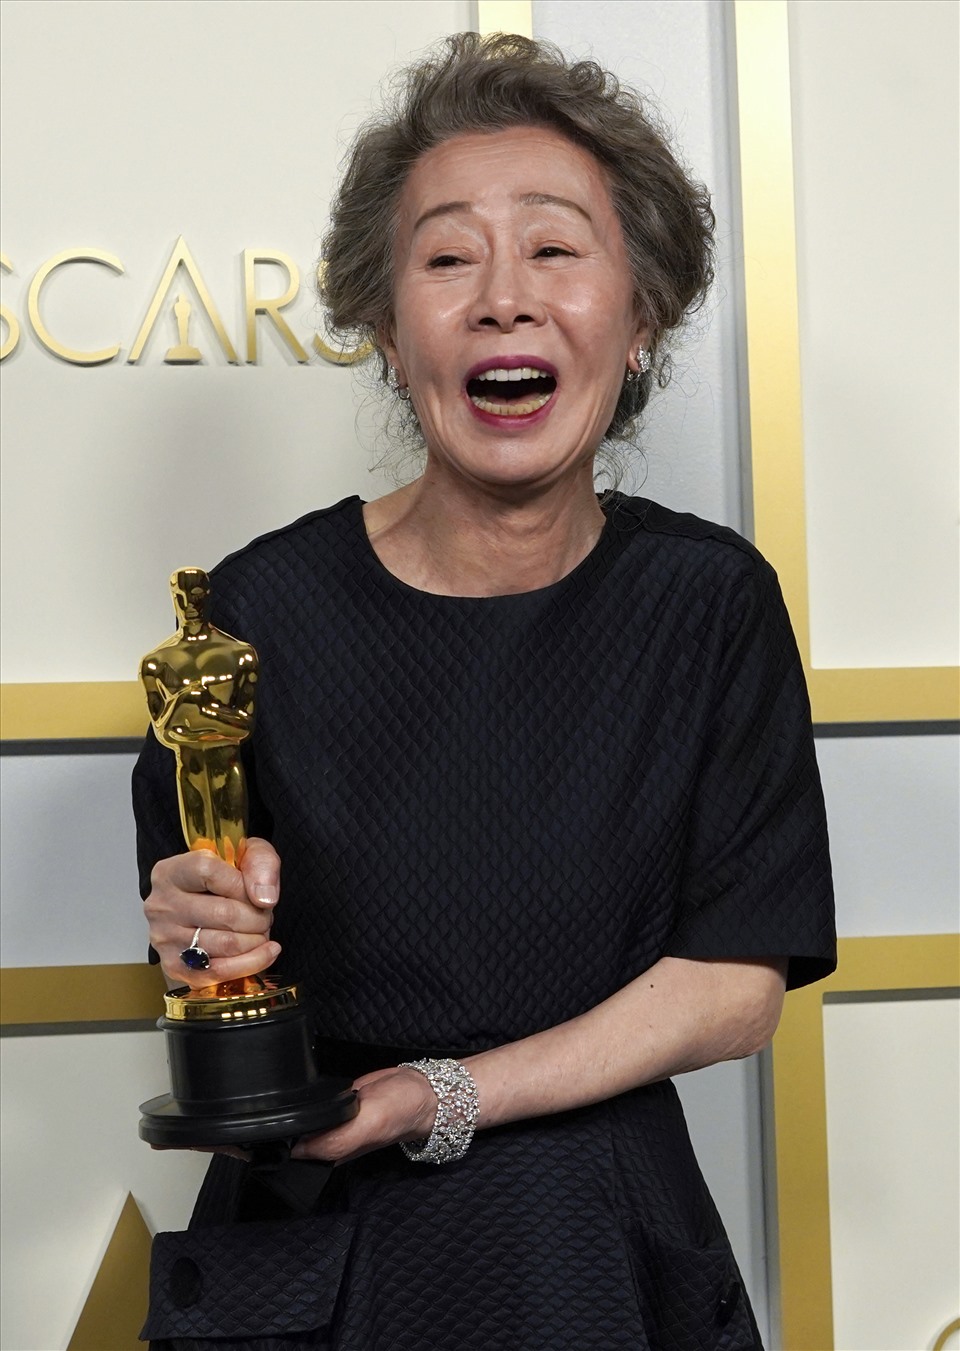 Nữ diễn viên Hàn Quốc Yuh-Jung Youn bật khóc khi giành giải “Nữ diễn viên phụ xuất sắc” trong phim “Minari“. Yuh-Jung Youn đã trở thành nữ diễn viên Hàn Quốc đầu tiên nhận tượng vàng Oscar danh giá. Ảnh: AFP